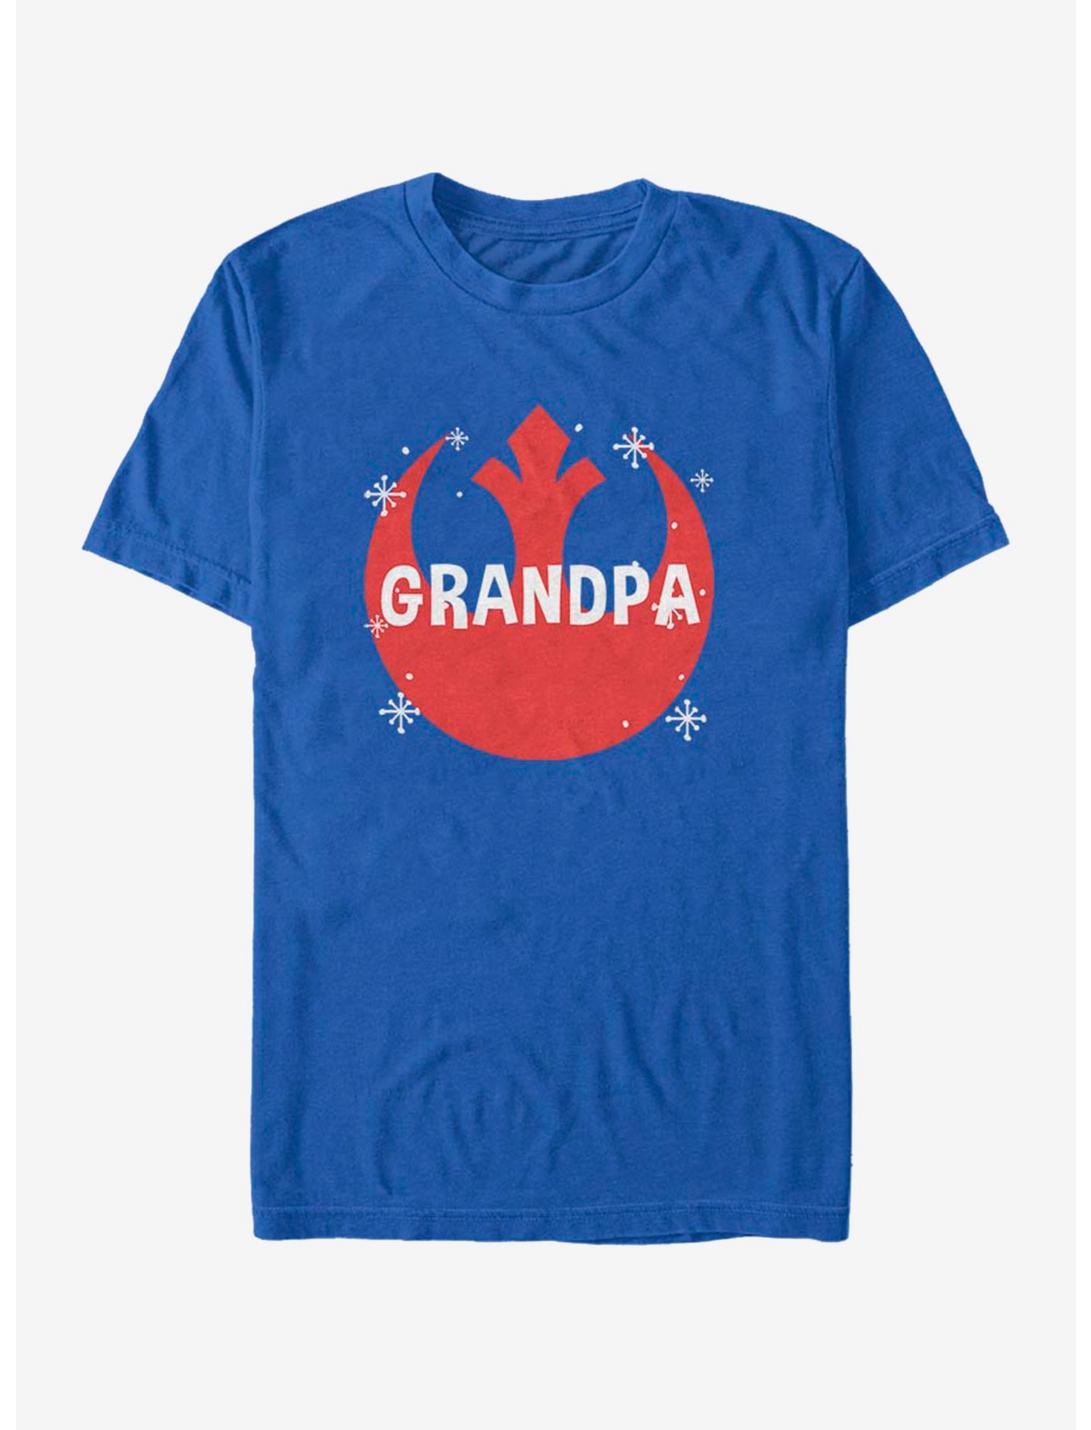 Star Wars Overlay Grandpa T-Shirt, ROYAL, hi-res